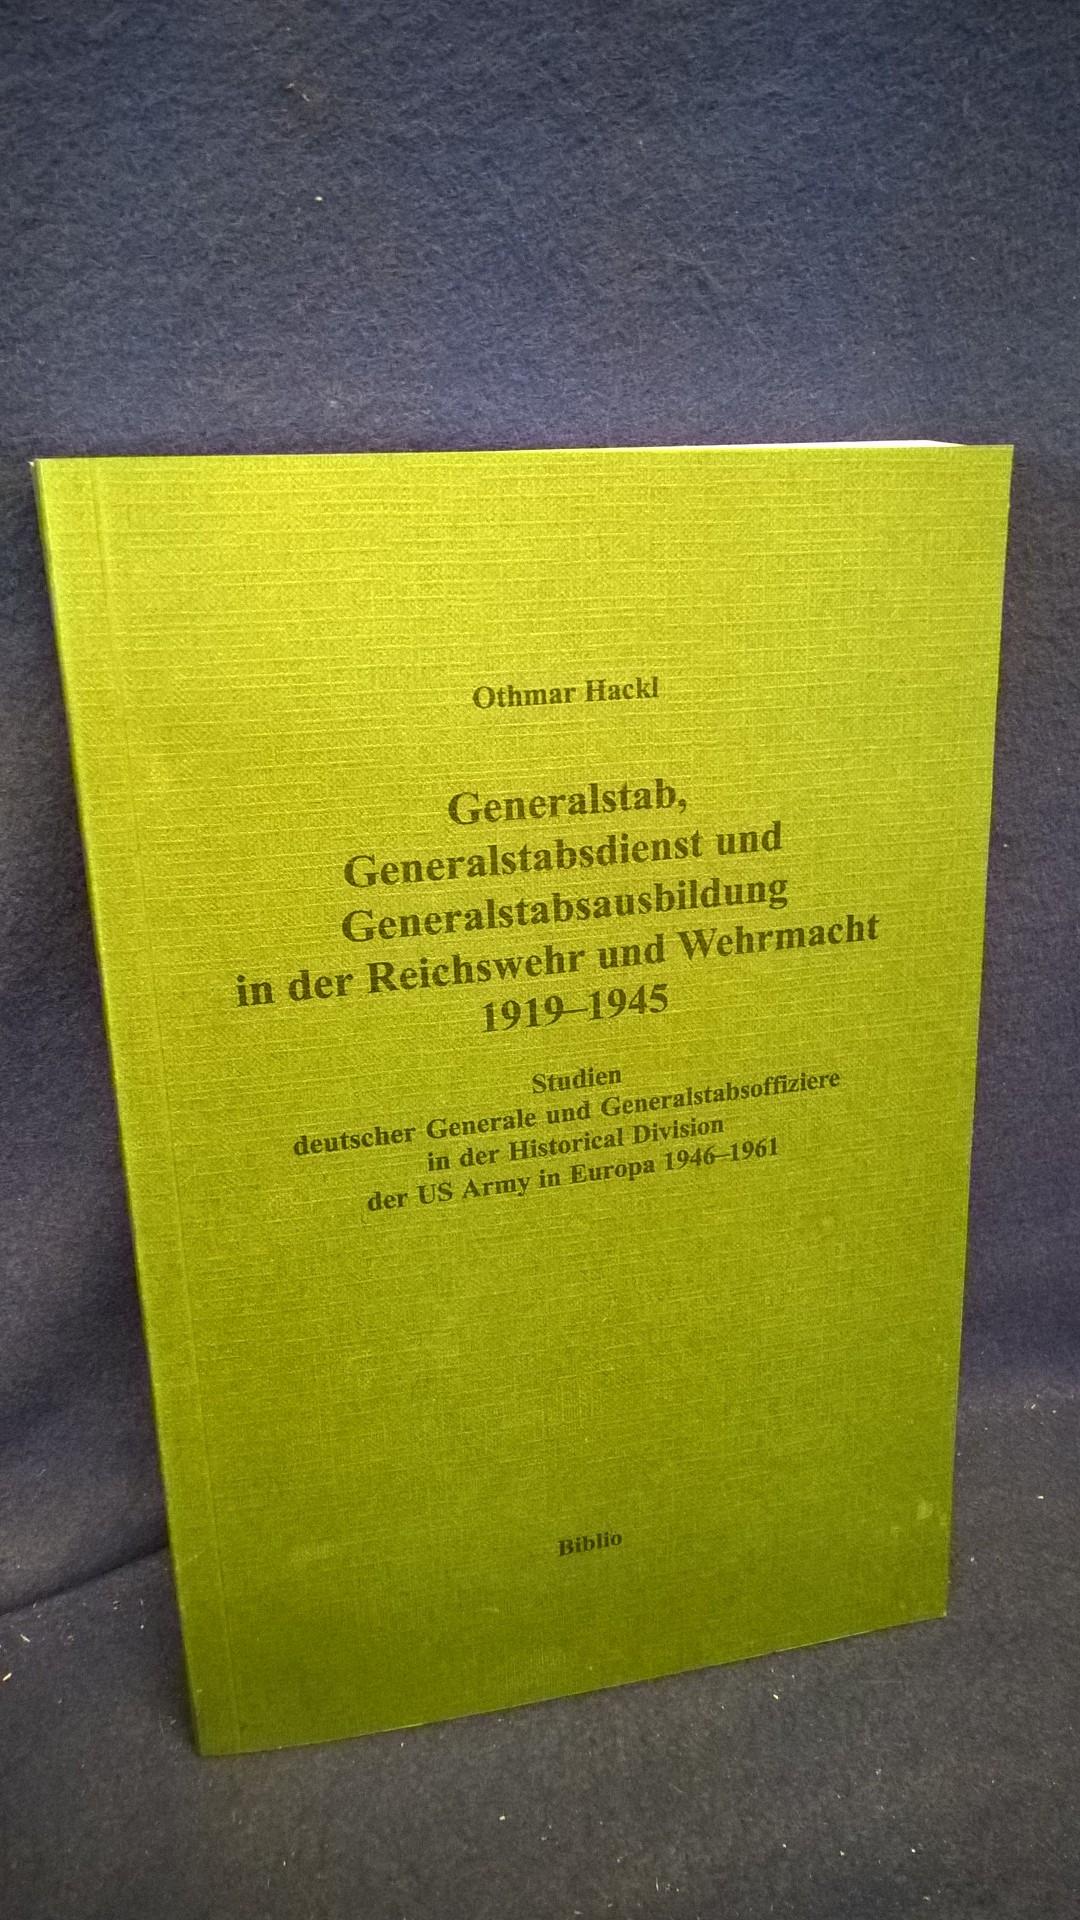 Generalstab, Generalstabsdienst und Generalstabsausbildung in der Reichswehr und Wehrmacht 1919-1945. Vergriffenes Exemplar!!